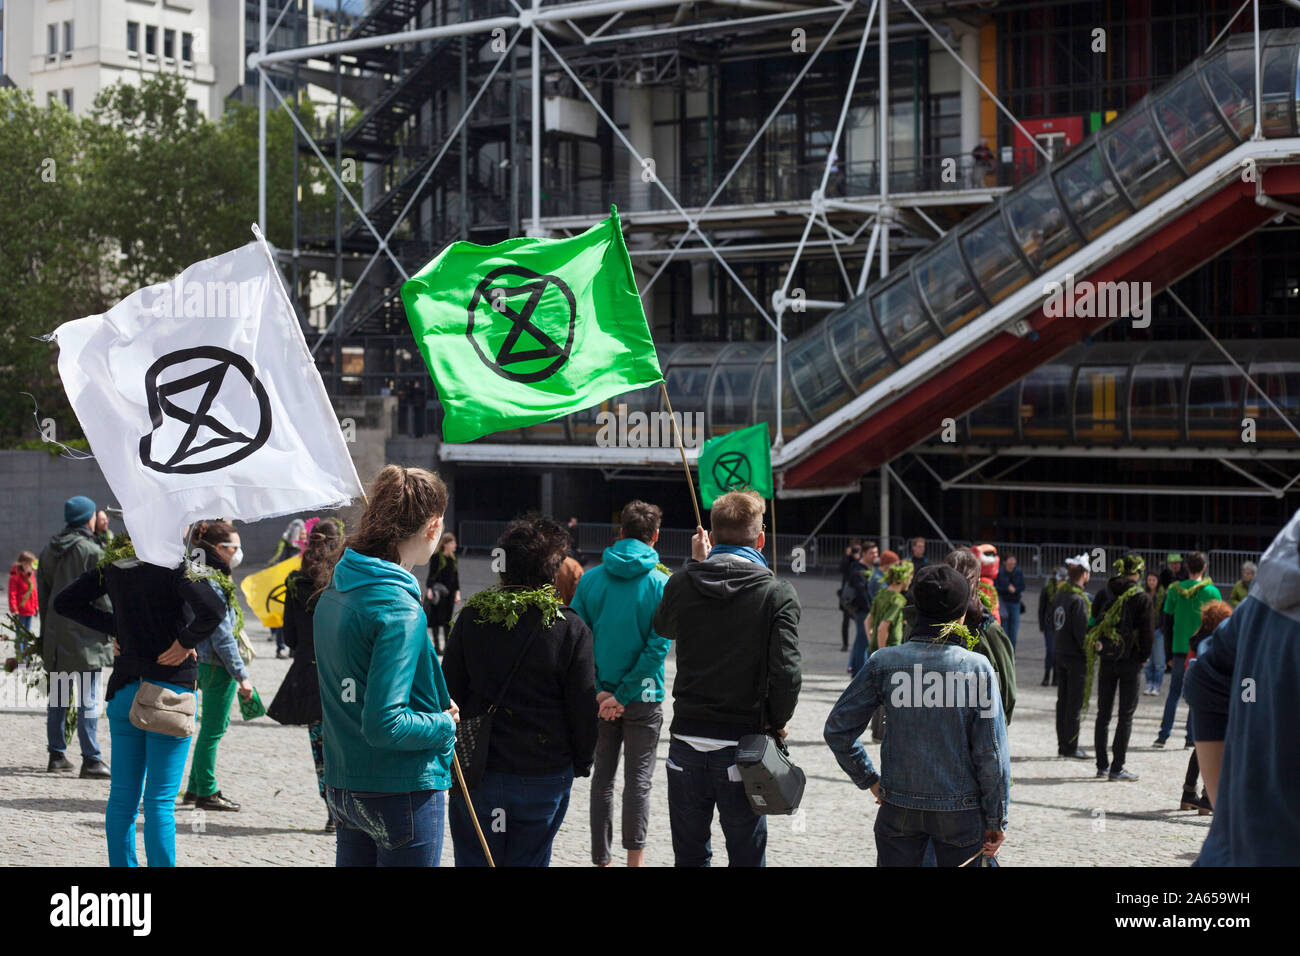 Le 27 avril, 12 h 05, dans le carré en font du Centre Pompidou à Paris, les militants de la situation socio-politique "mouvement de rébellion d'Extinction France" j Banque D'Images